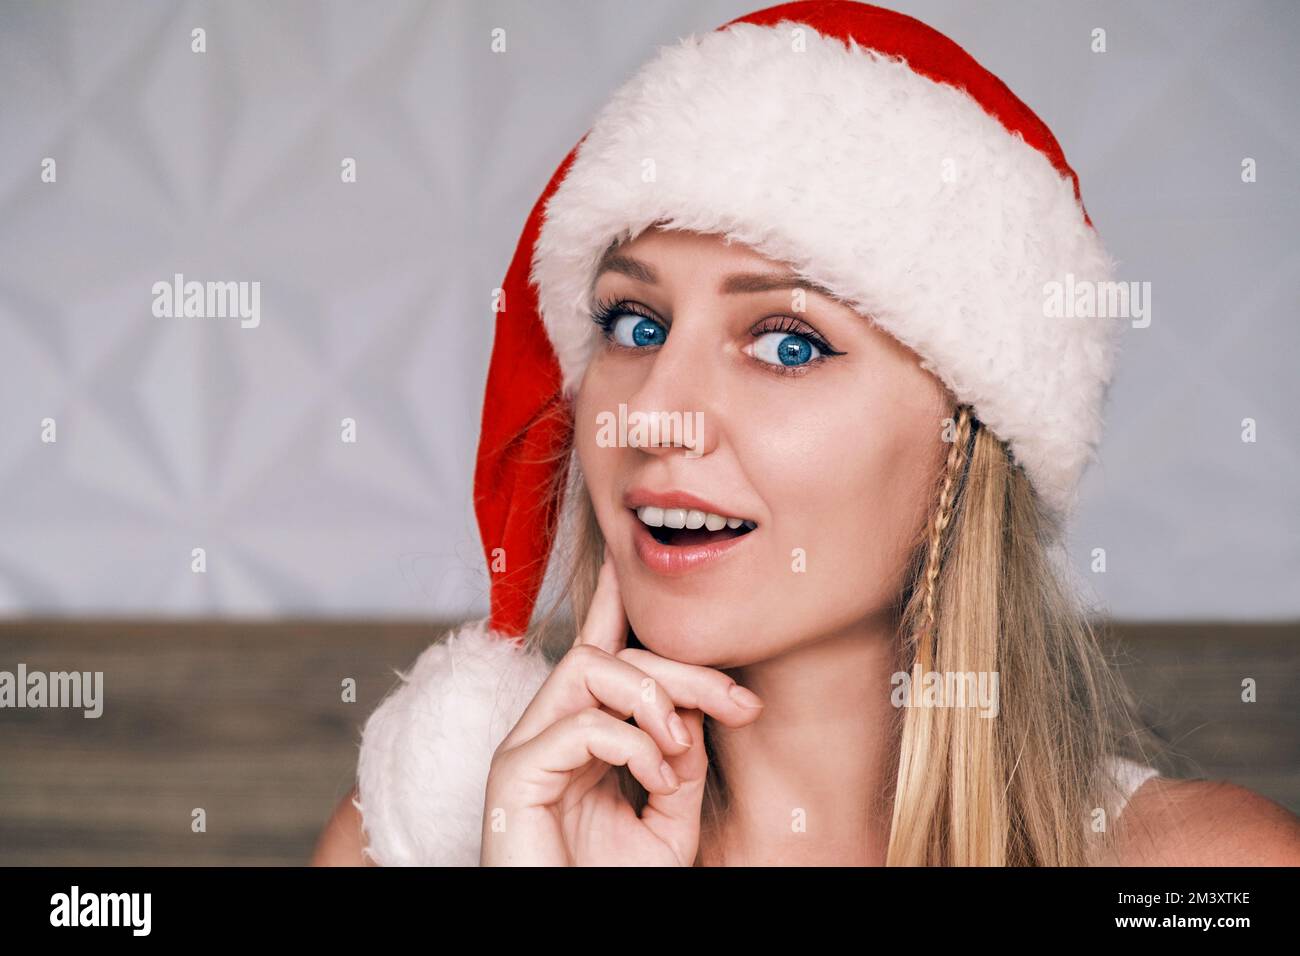 Santa ragazza sorridente e sognante che indossa un cappello rosso che tocca la guancia con un dito guardando la macchina fotografica. Ritratto di bella giovane donna con nel cappello di Babbo Natale Foto Stock